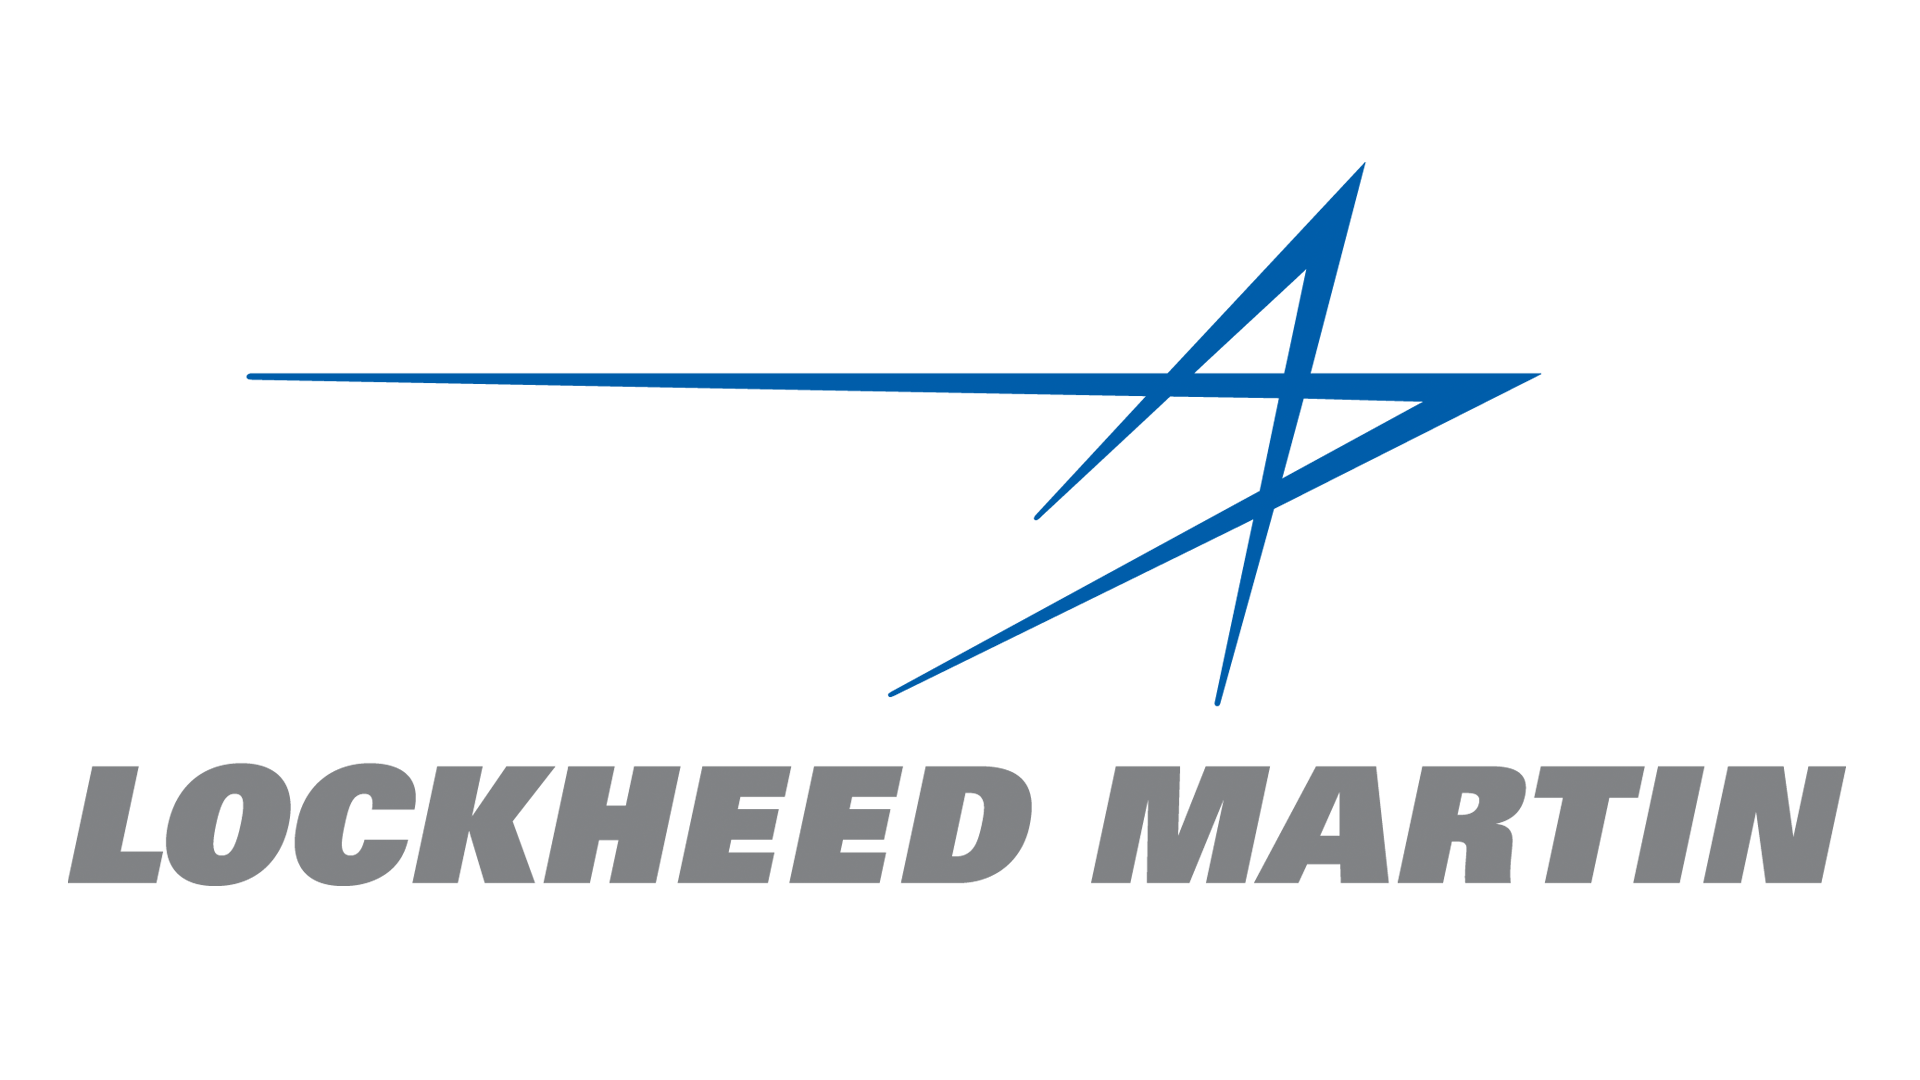 Locheed Martin Logo - Image - Lockheed-martin-logo.png | Logopedia | FANDOM powered by Wikia